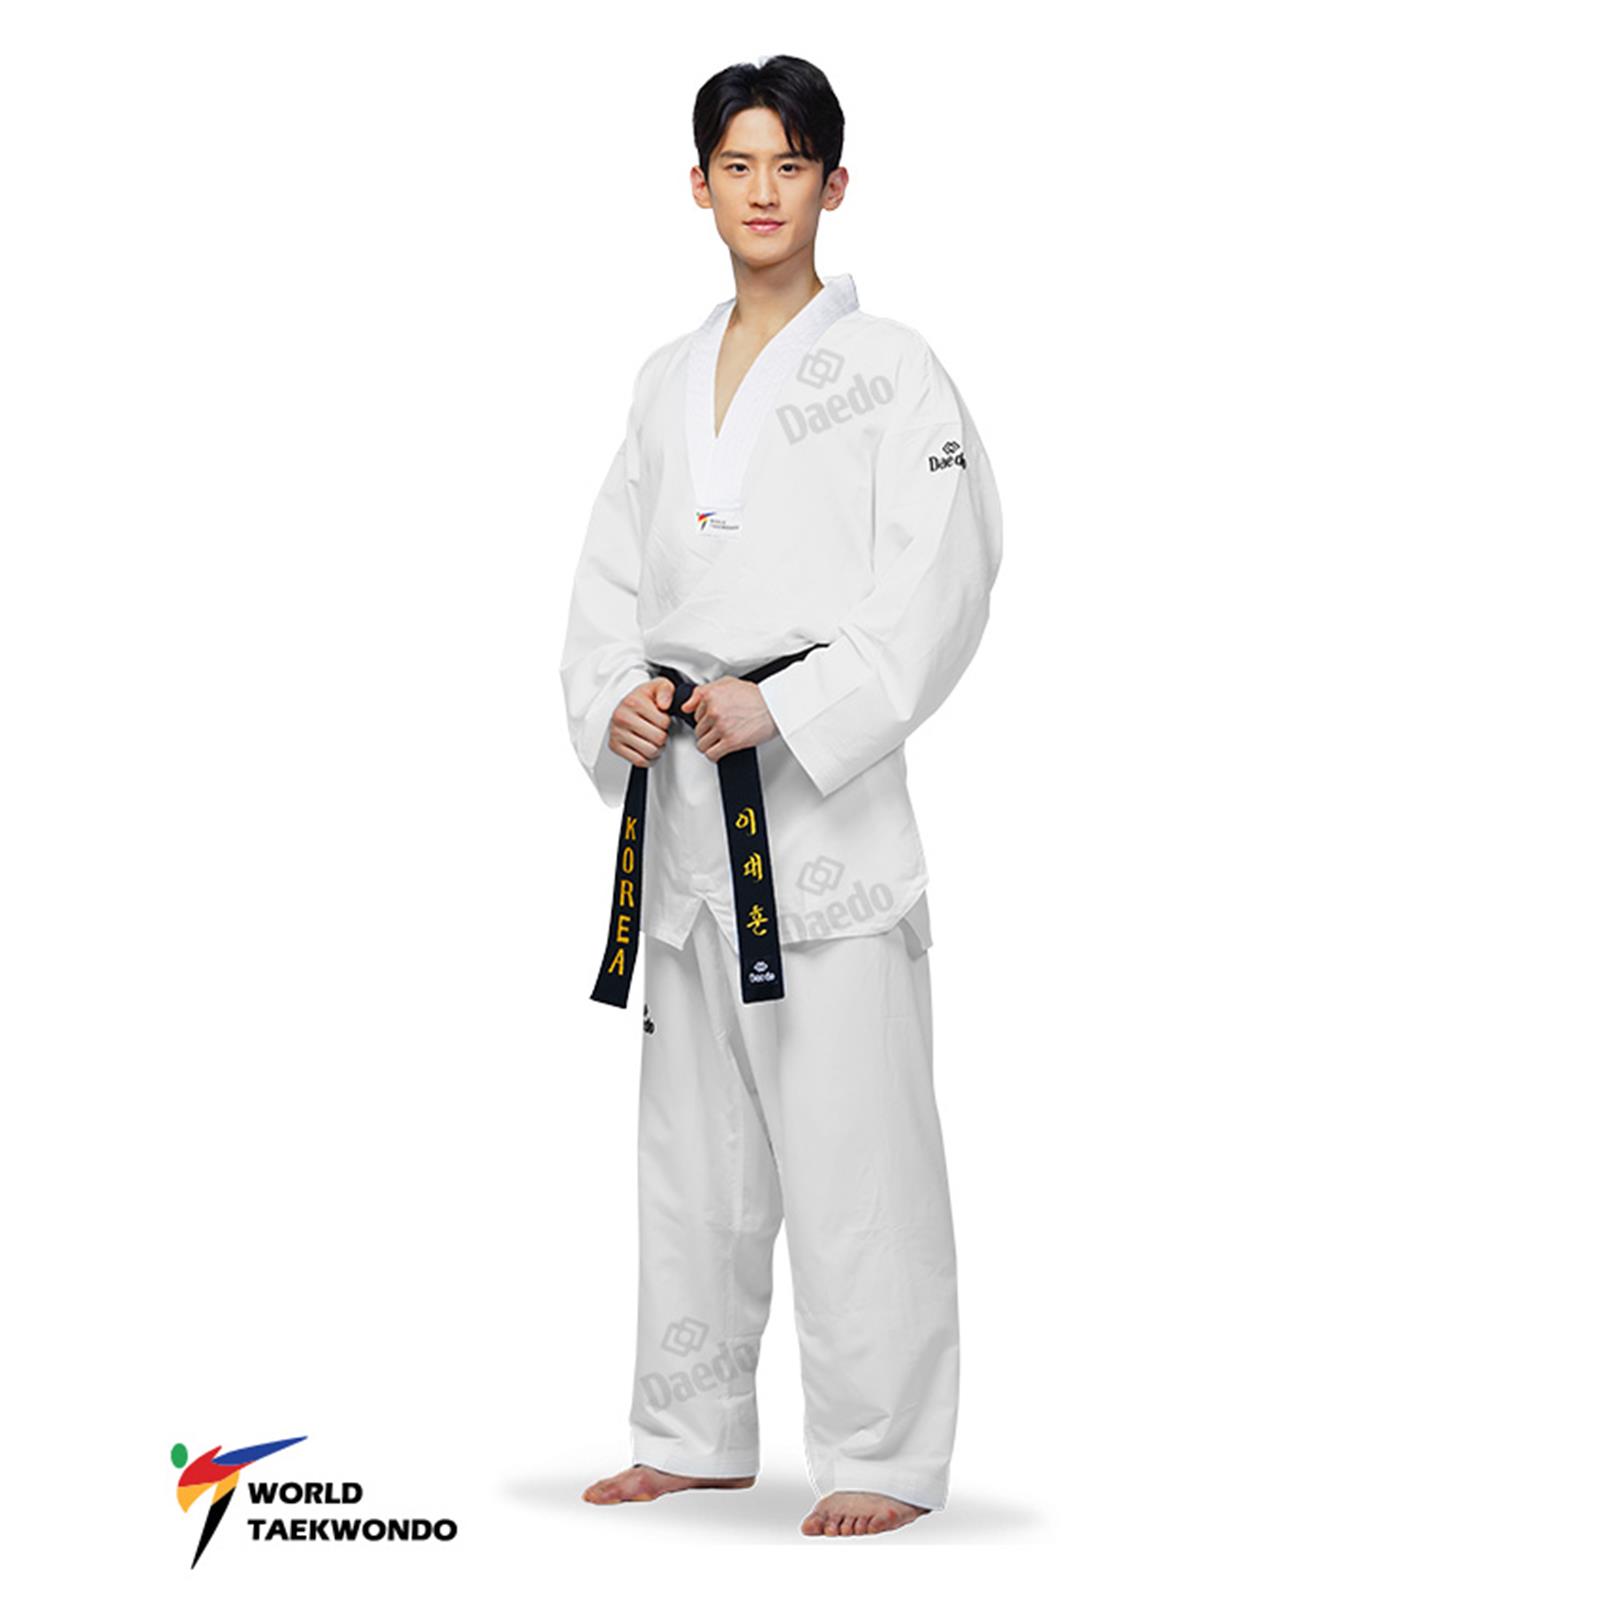 Dae Do Dobok Taekwondo "UltraLight 40G" Ultraleggero